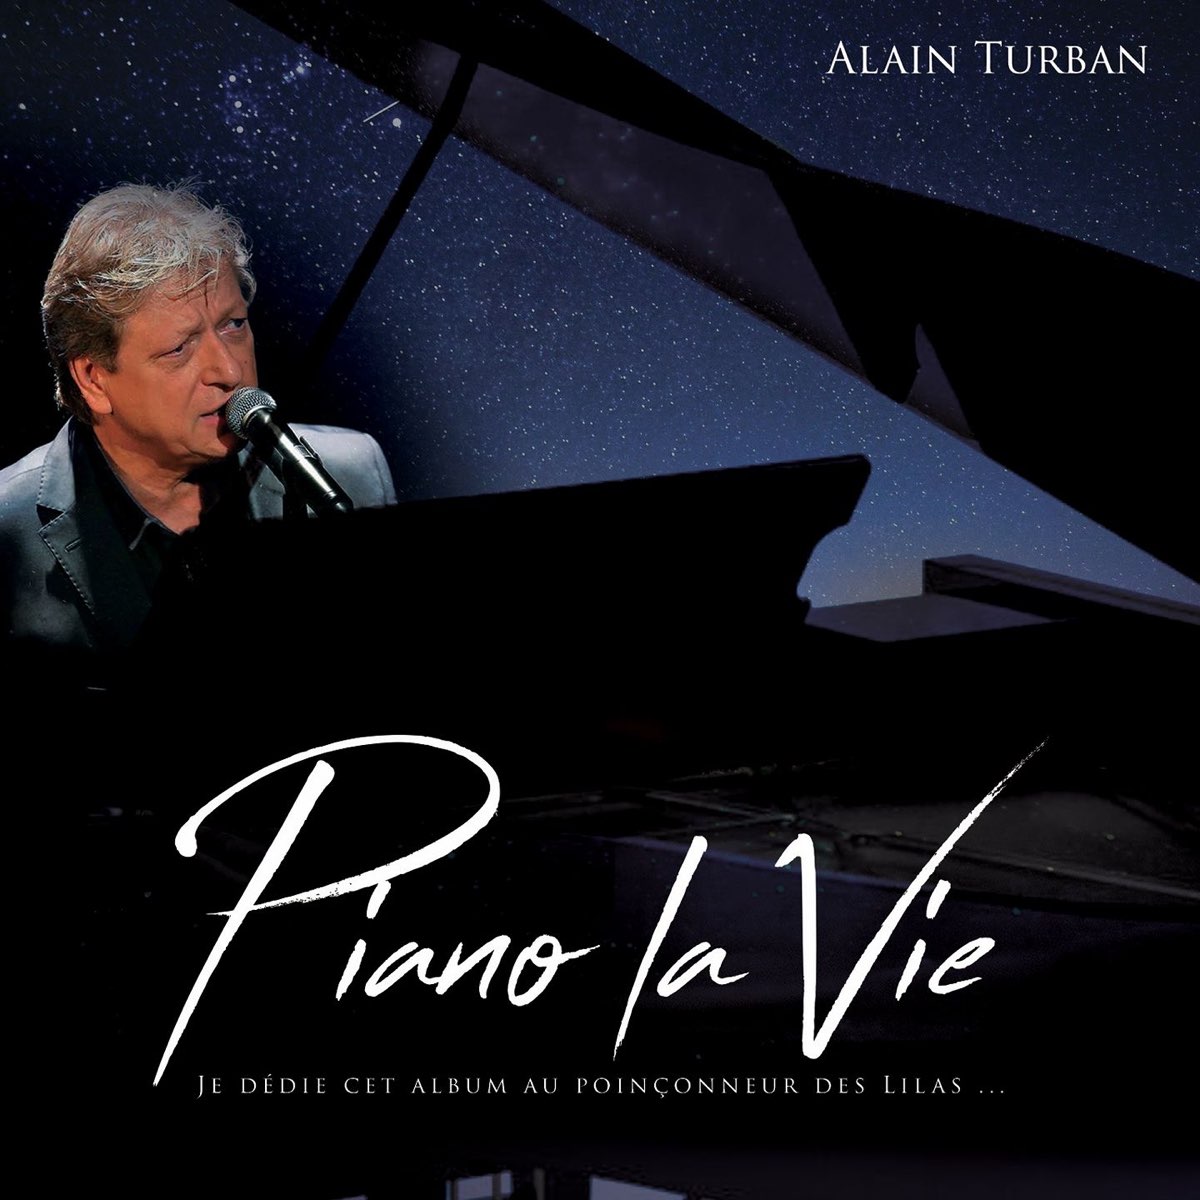 Piano la vie (Dédié au poinçonneur des lilas) by Alain Turban on Apple Music